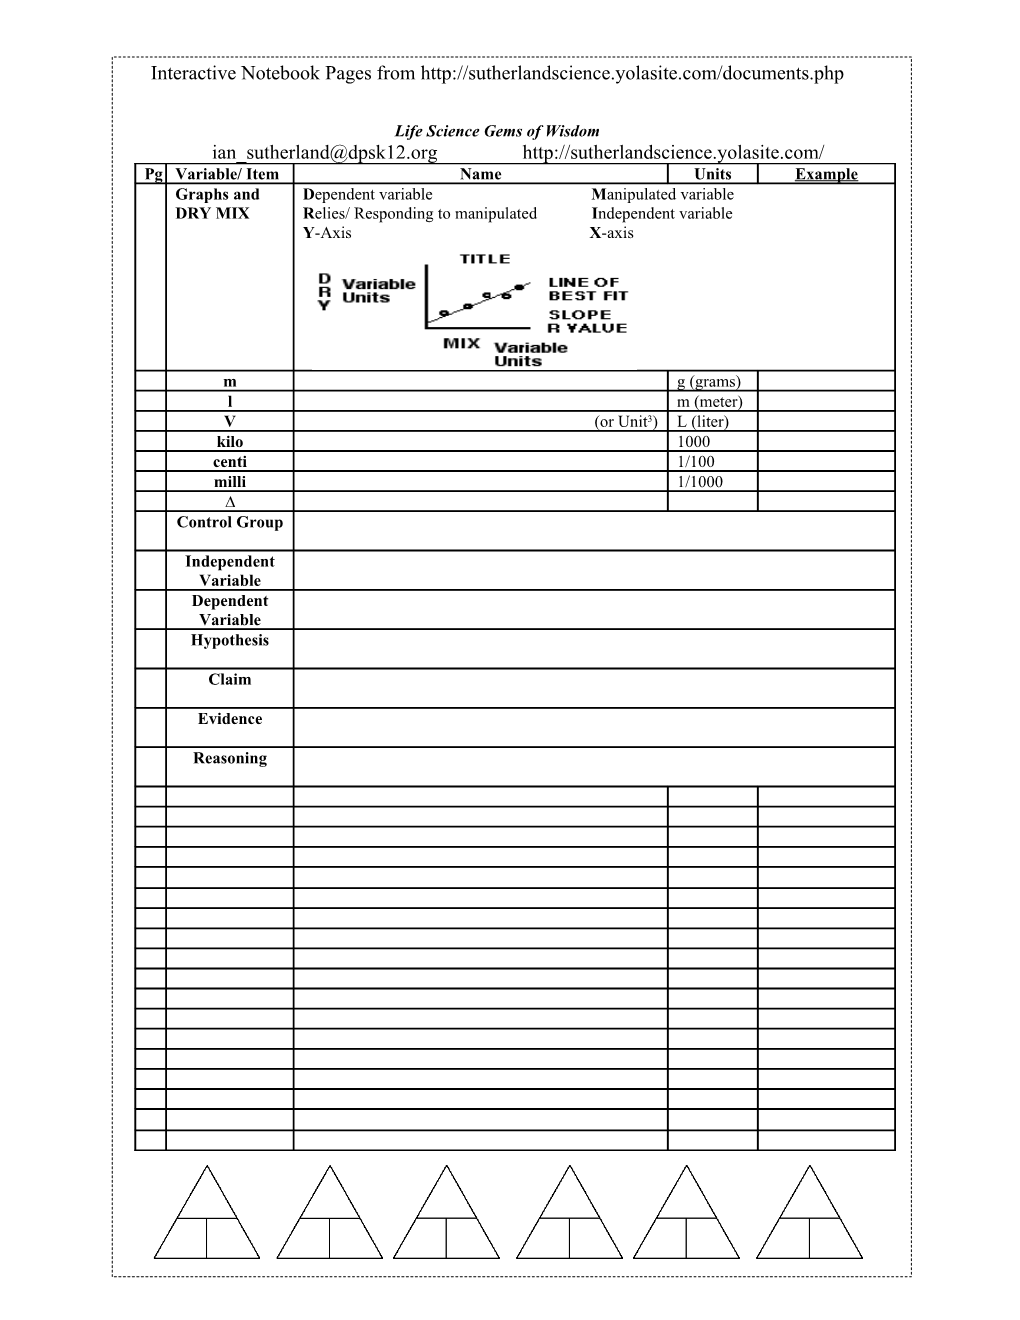 Interactive Notebook Score Sheet